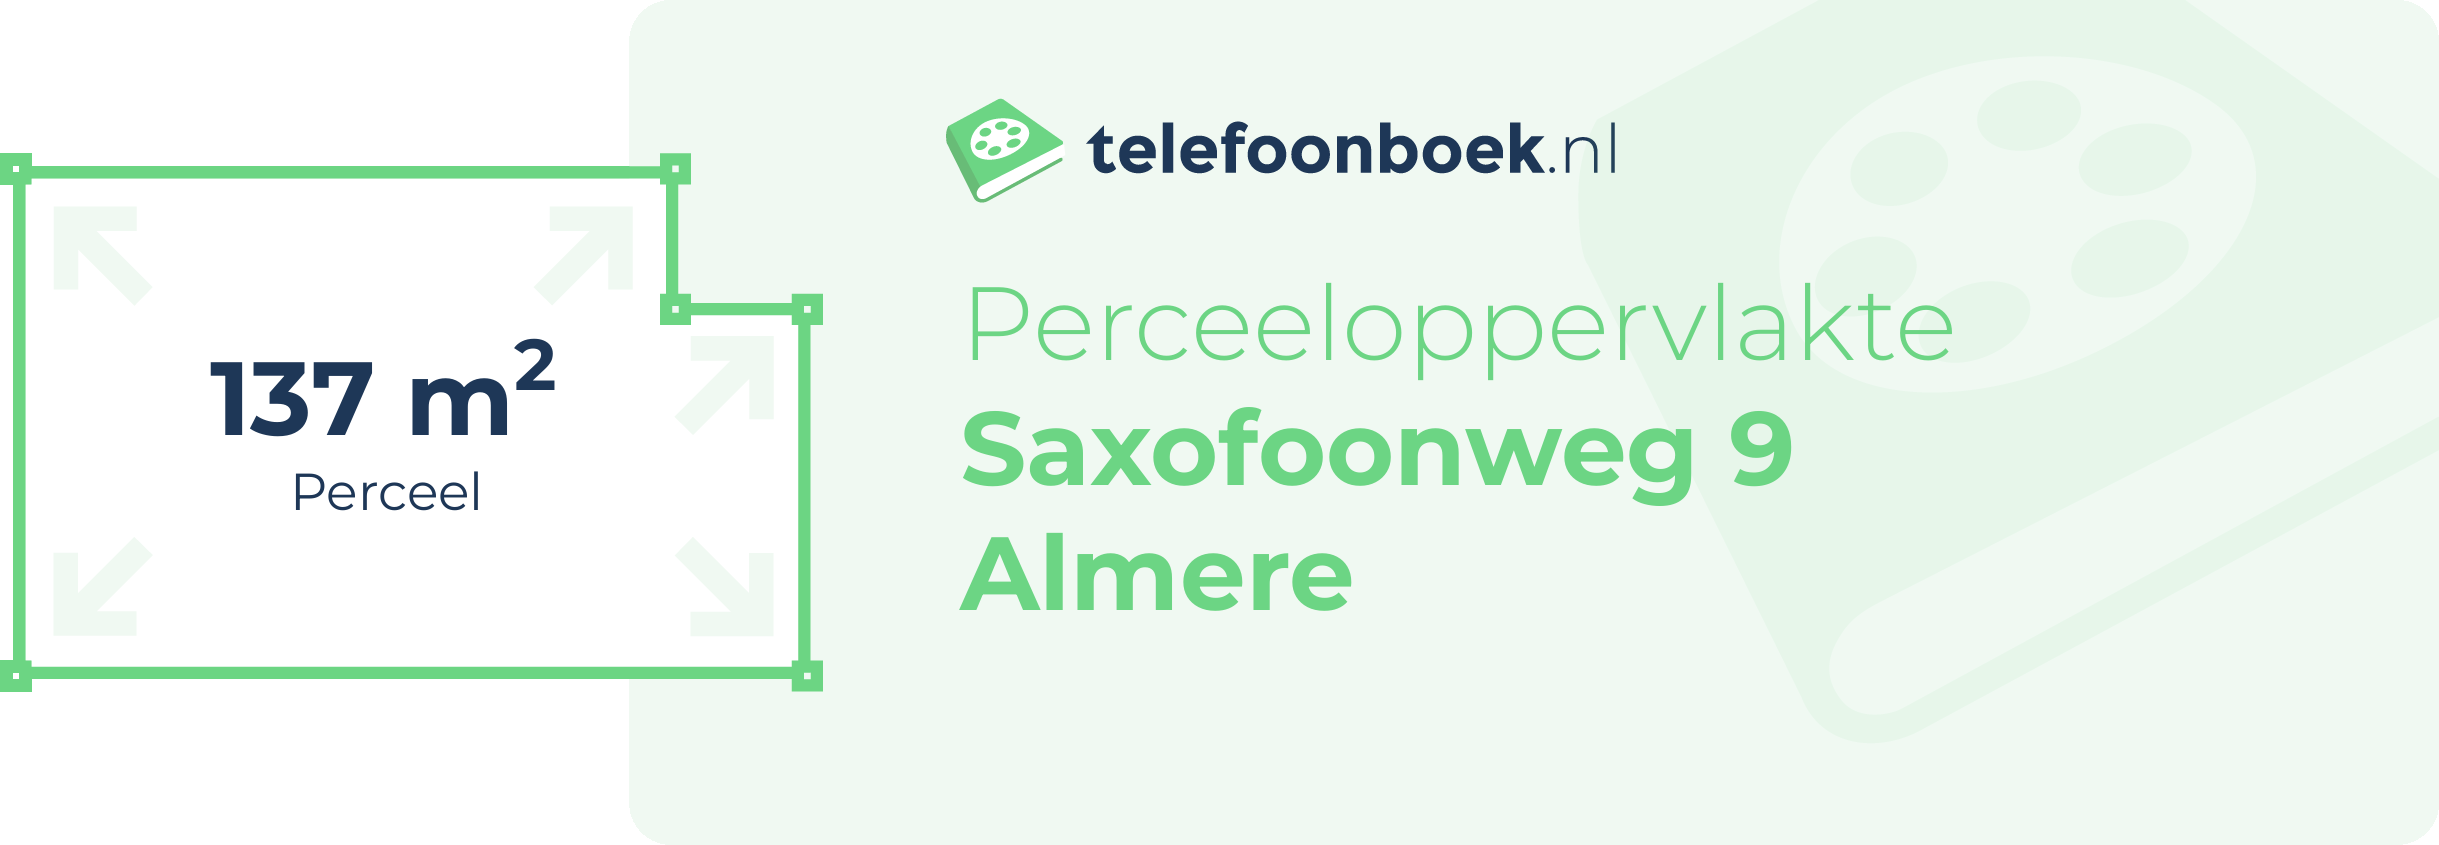 Perceeloppervlakte Saxofoonweg 9 Almere